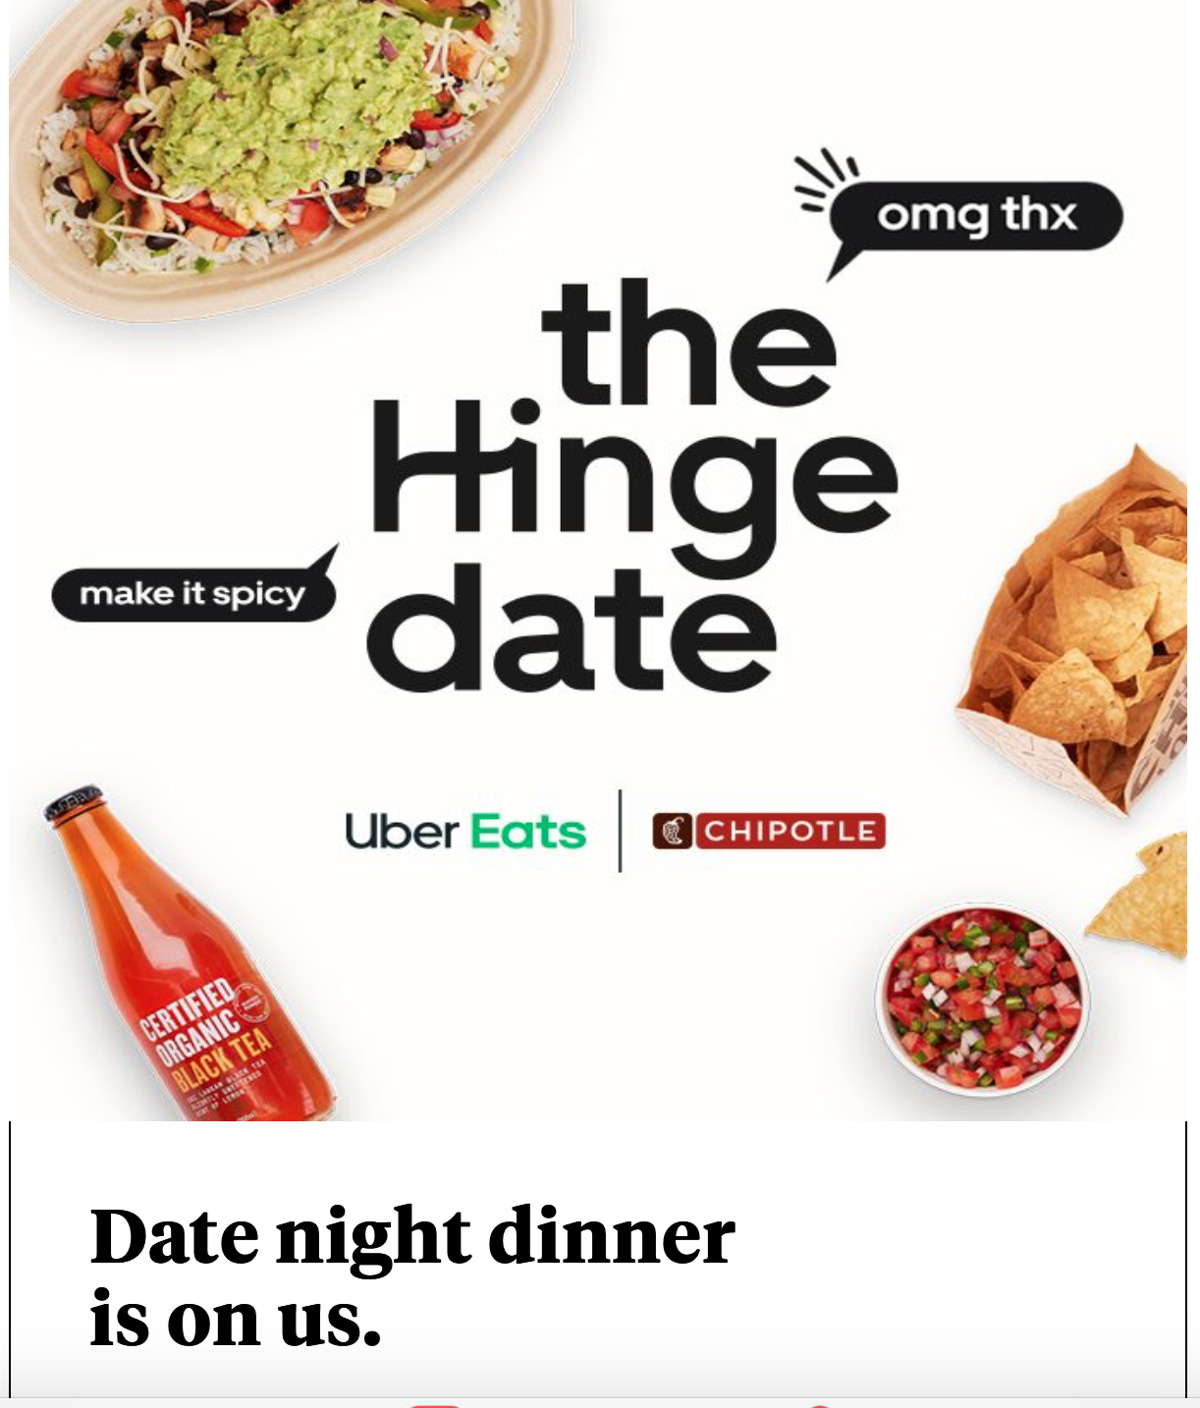 Résultat de recherche d'images pour "uber eats and chipotle date night"